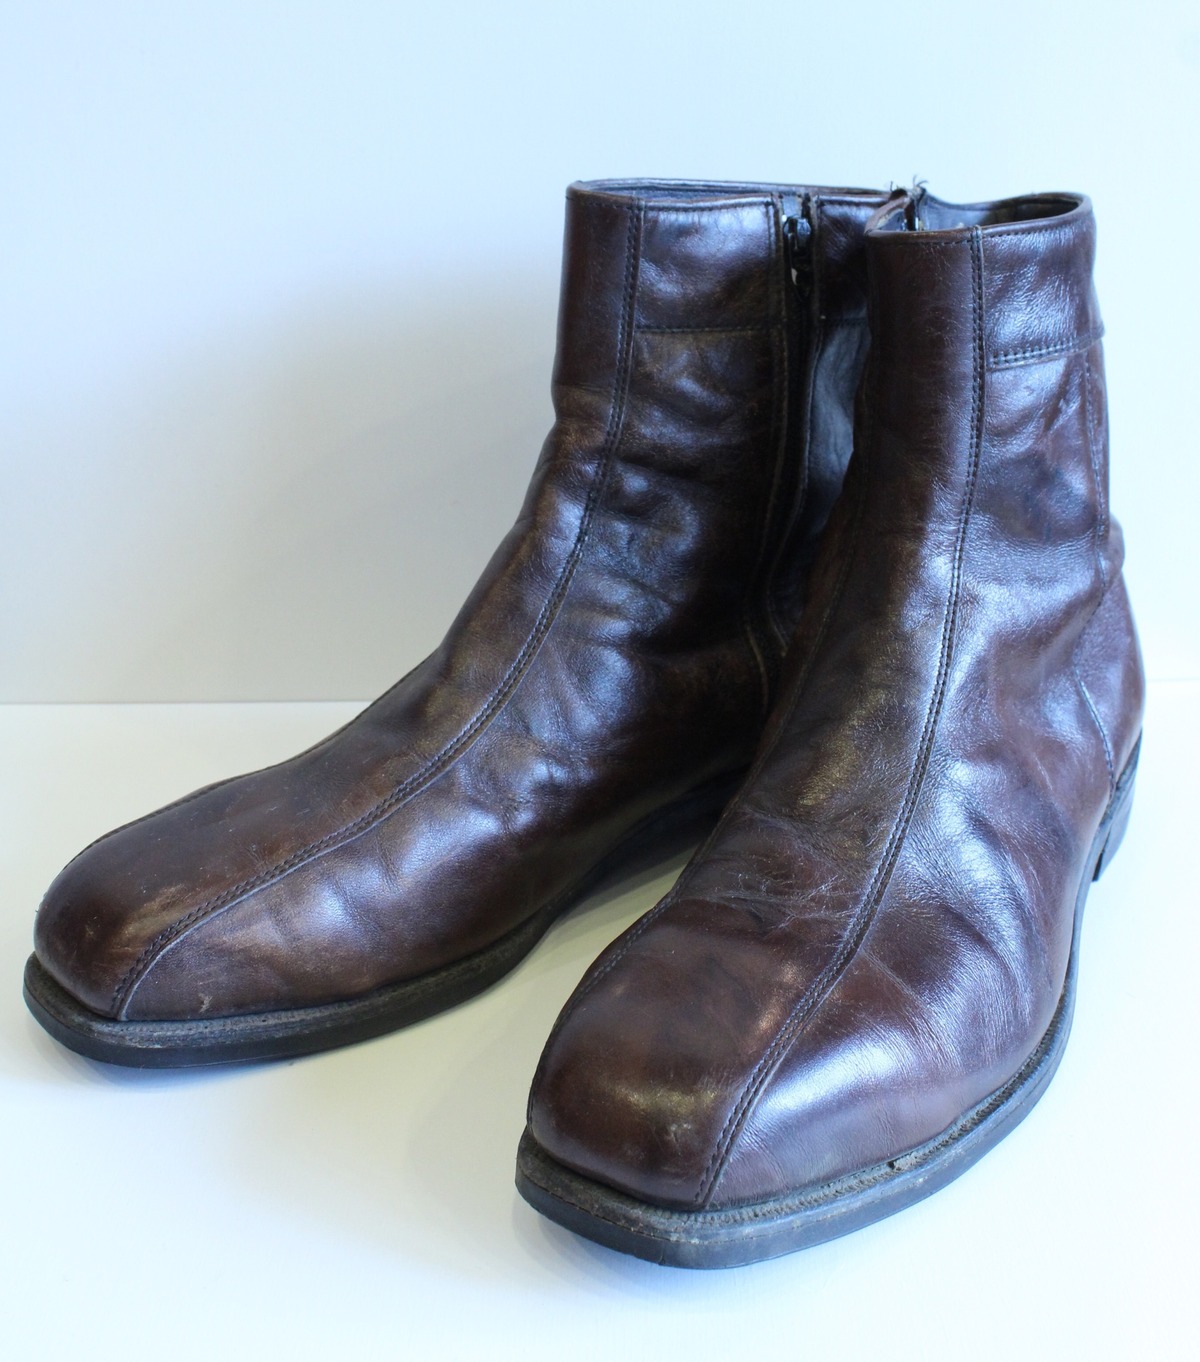 Vintage Beatle Boots | vintage clothing & Antiques worn.